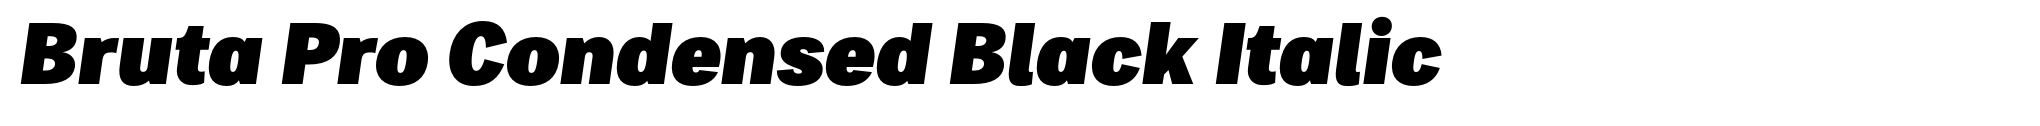 Bruta Pro Condensed Black Italic image